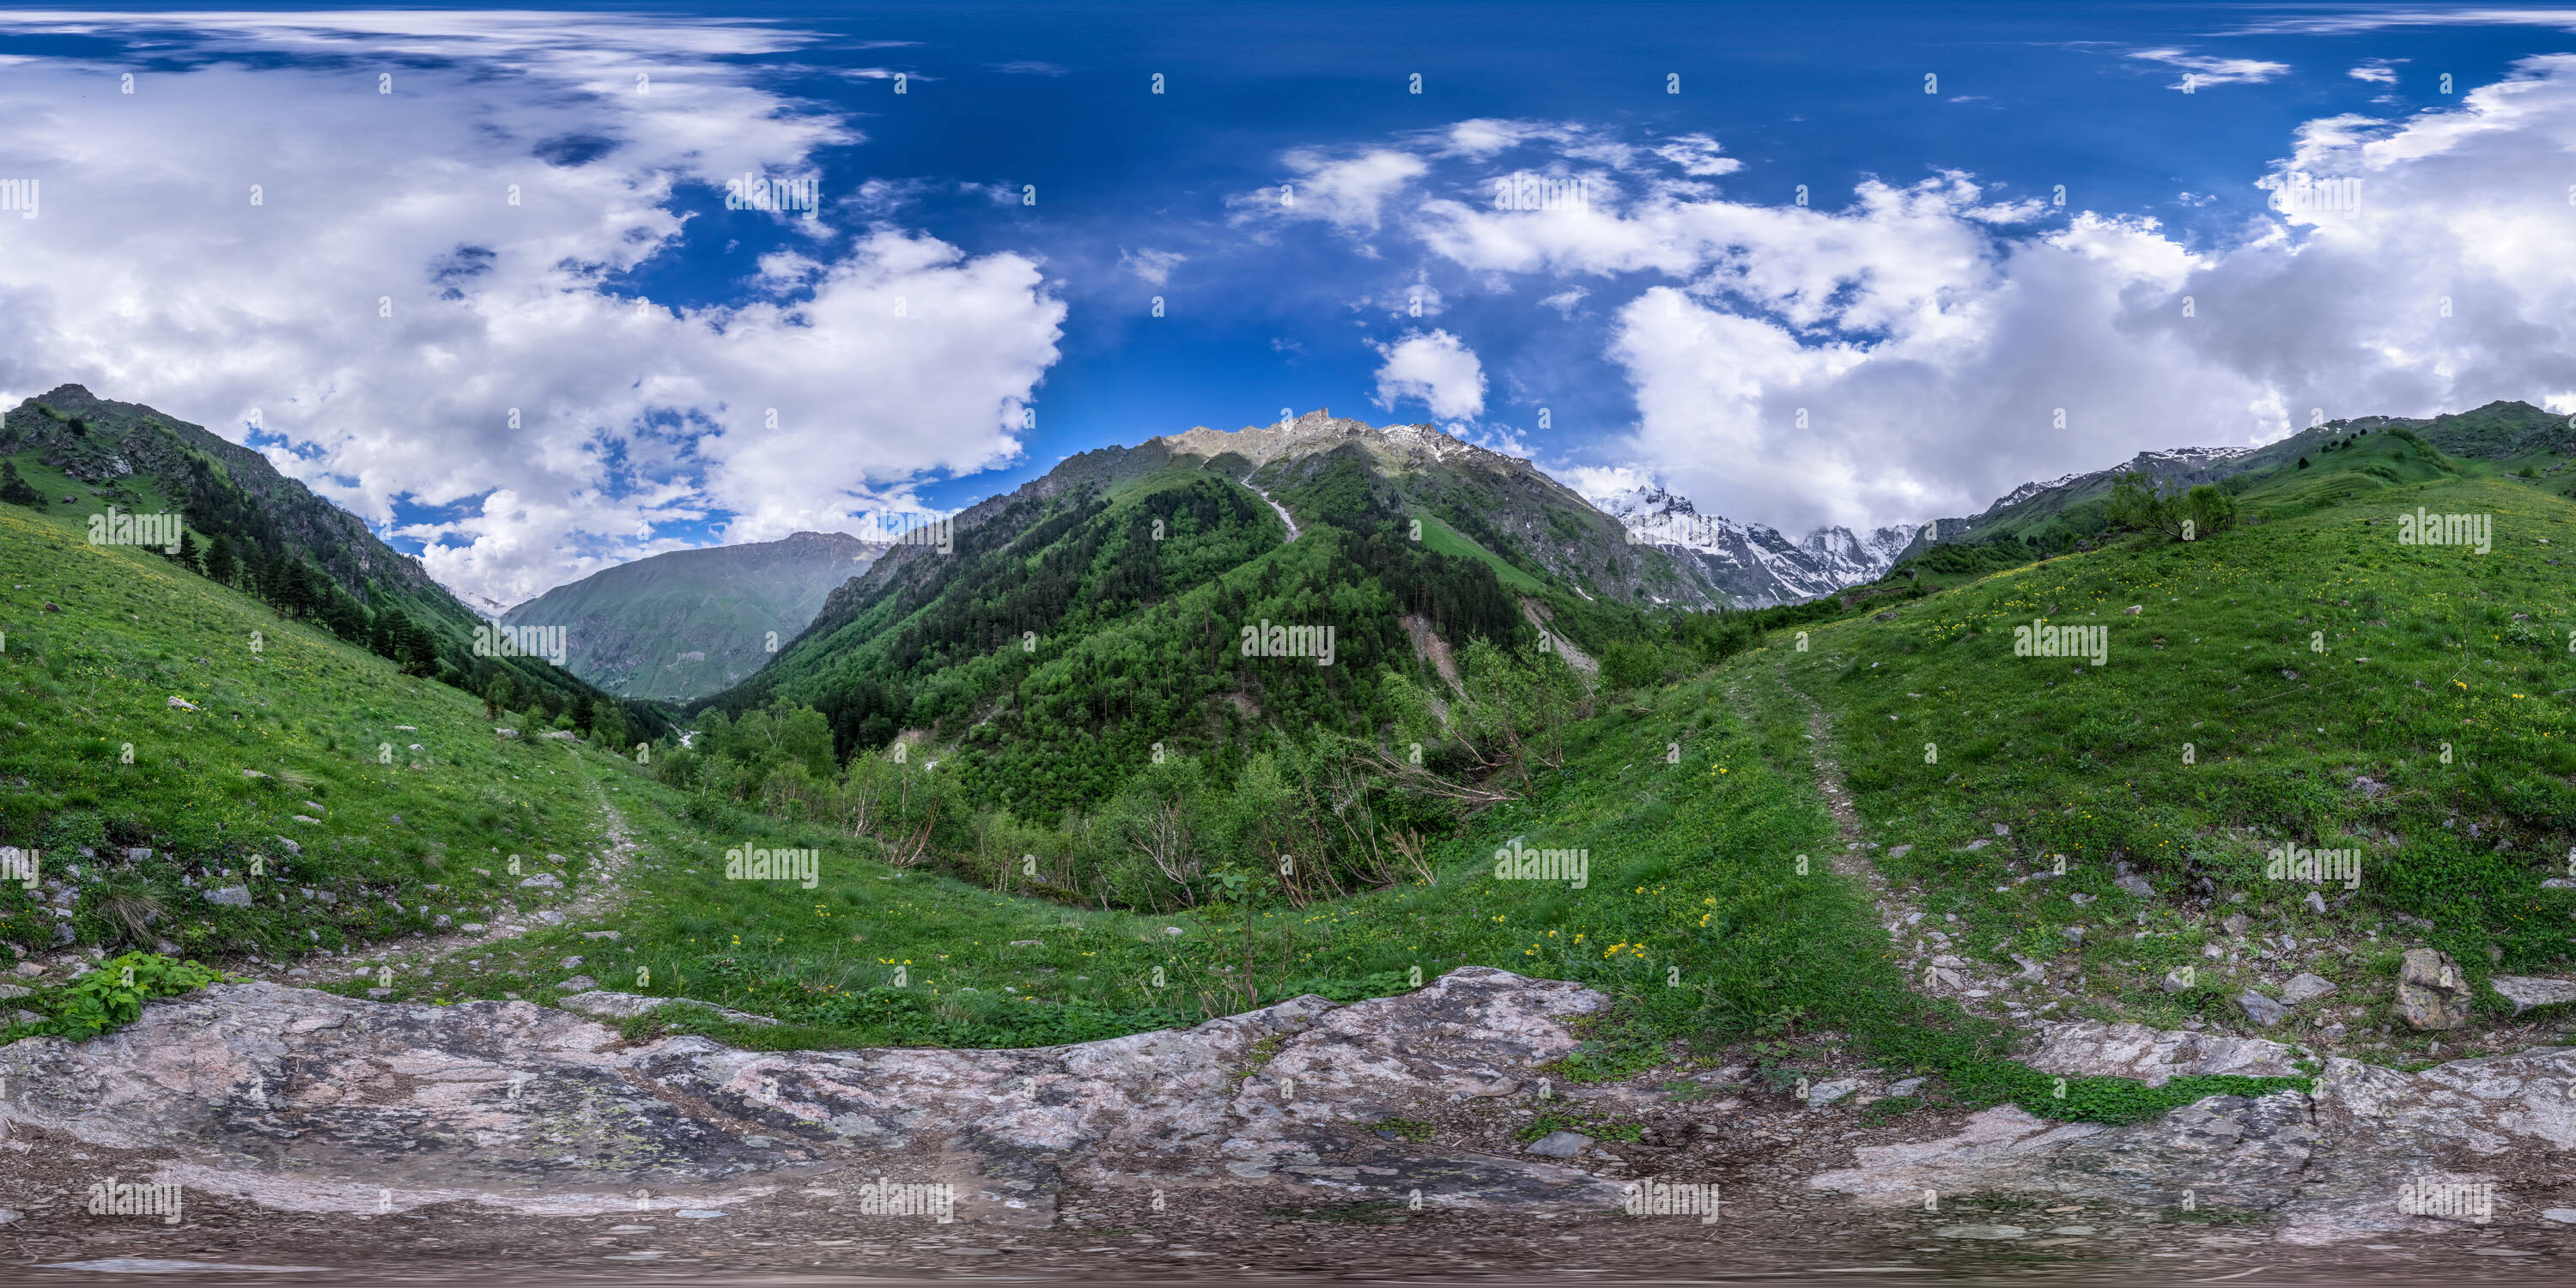 360 degree panoramic view of Shkhelda (Panorama 295 2015/06/13)